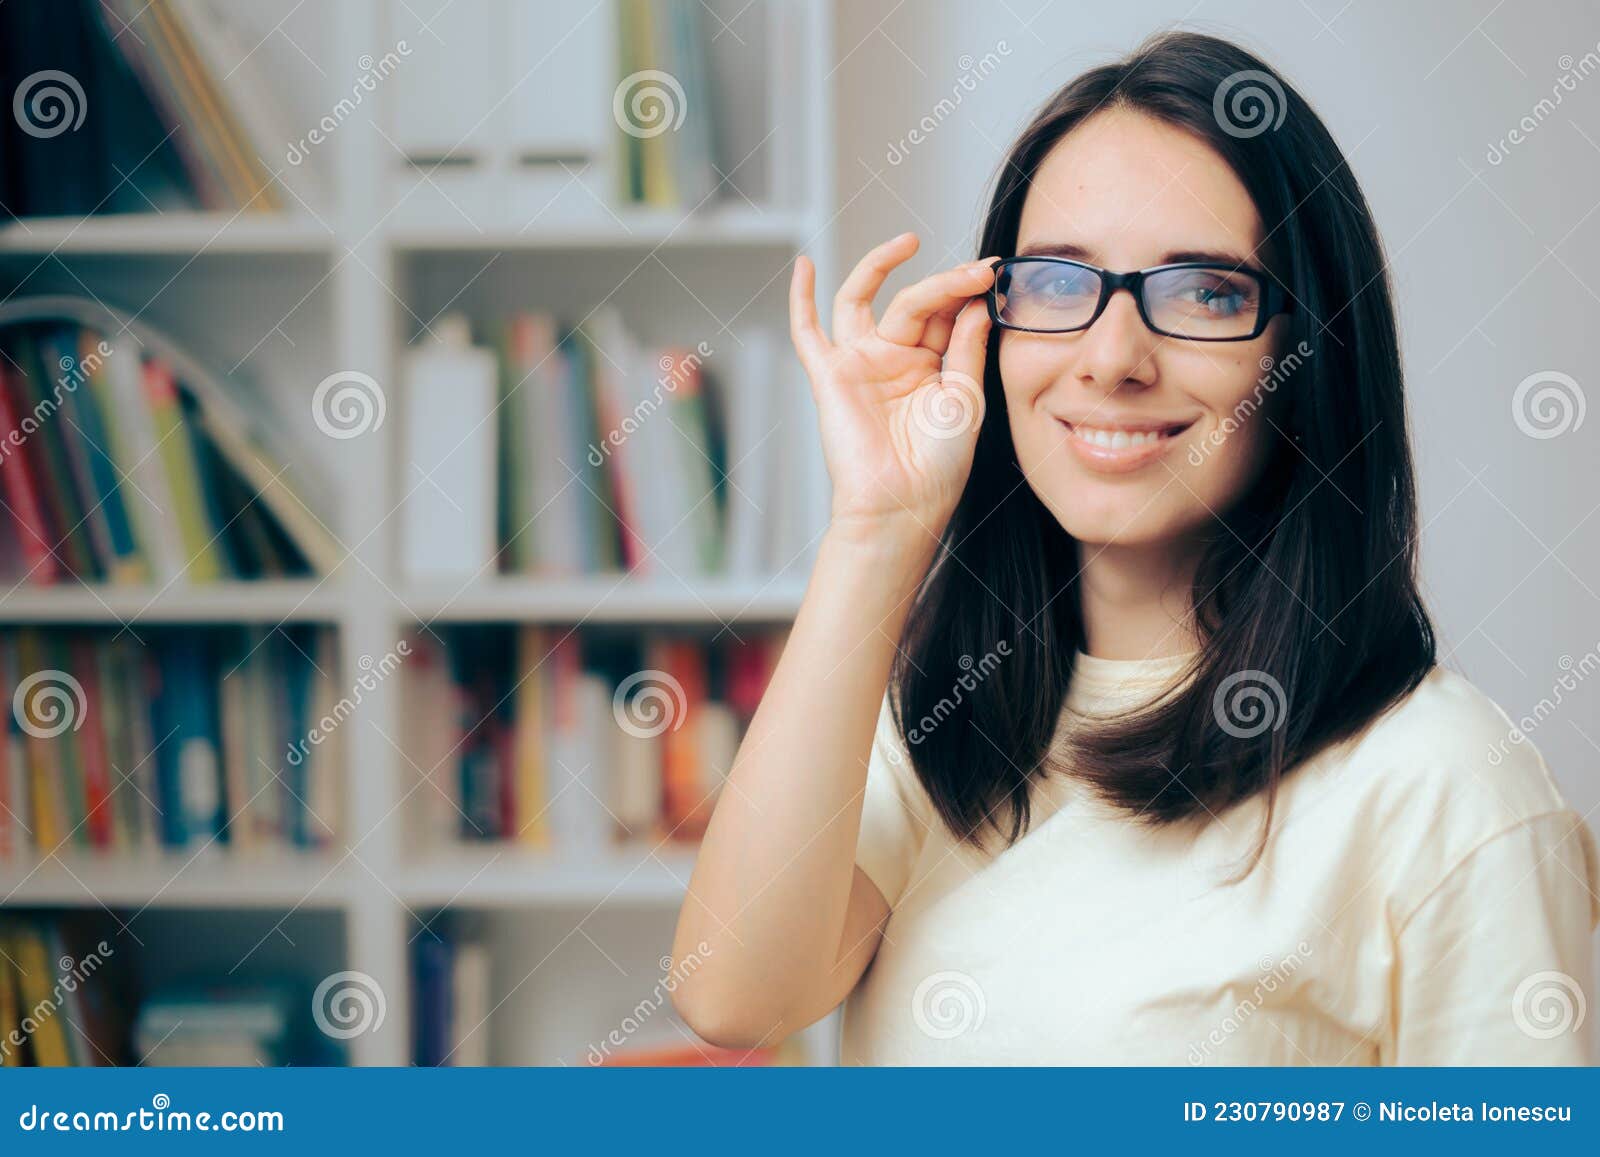 戴眼镜的文艺少女图片桌面电脑壁纸_桌面壁纸_mm4000图片大全